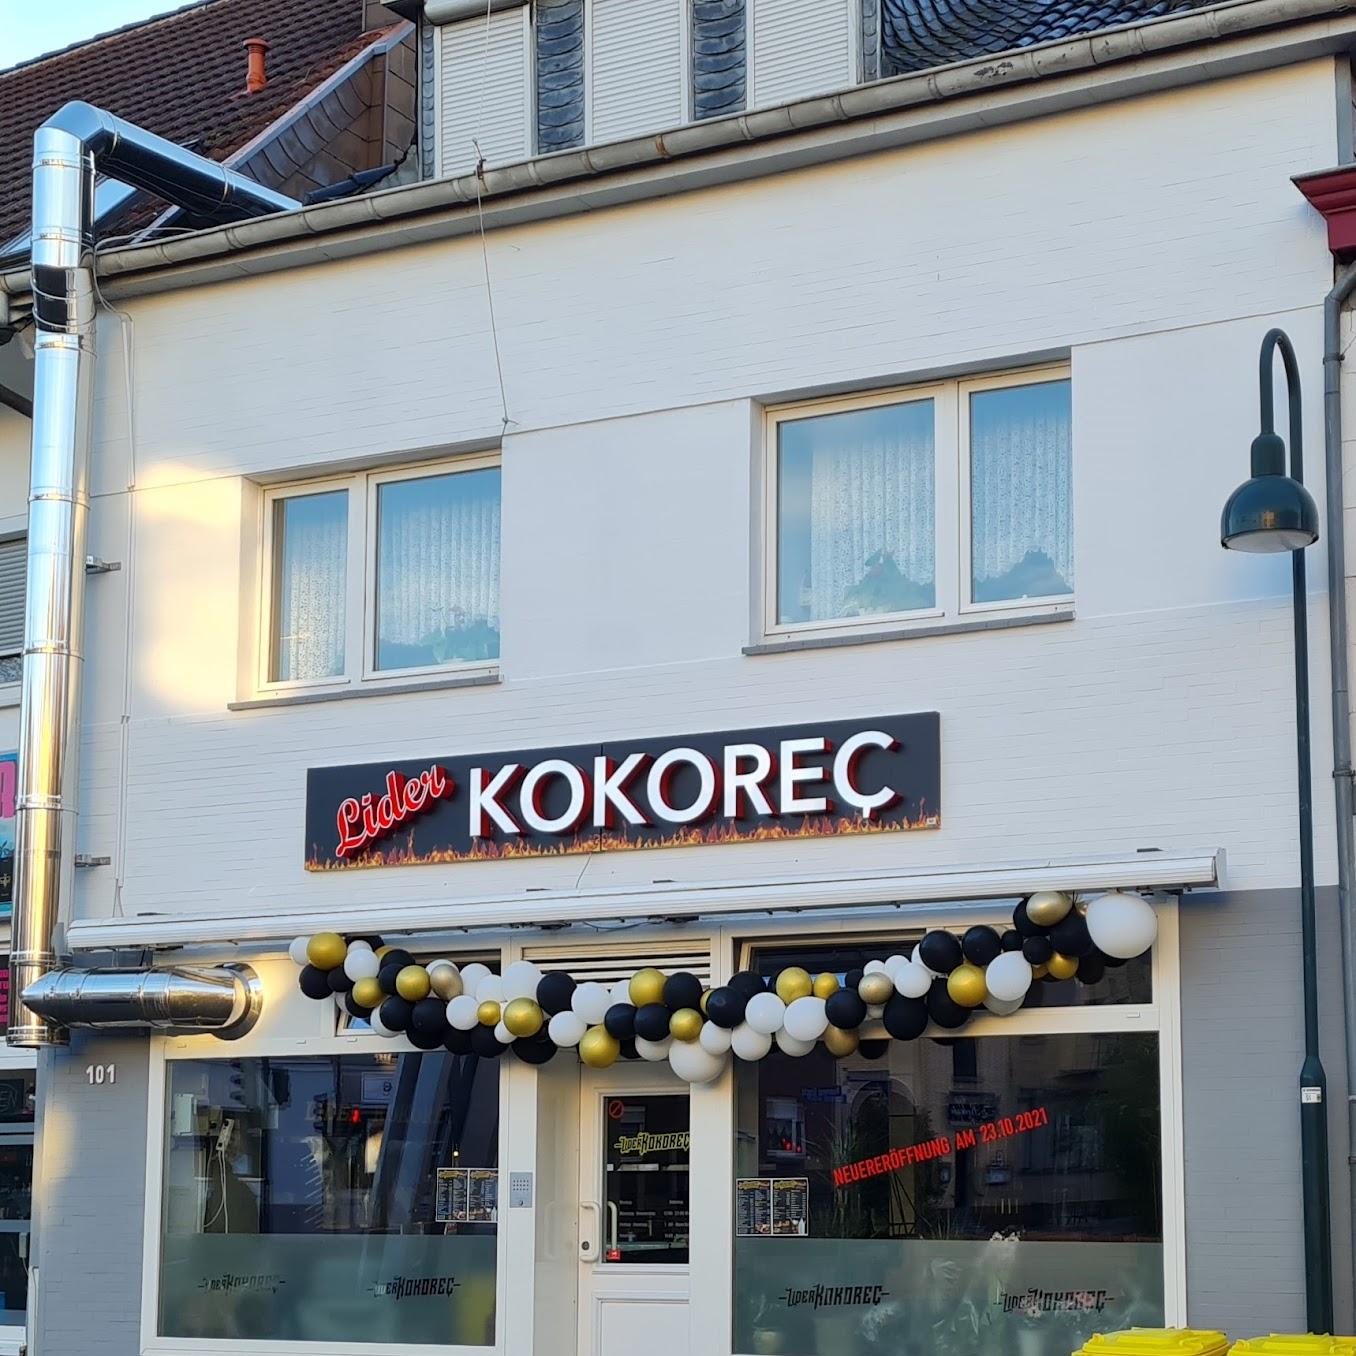 Restaurant "Lider Kokoreç" in Aachen